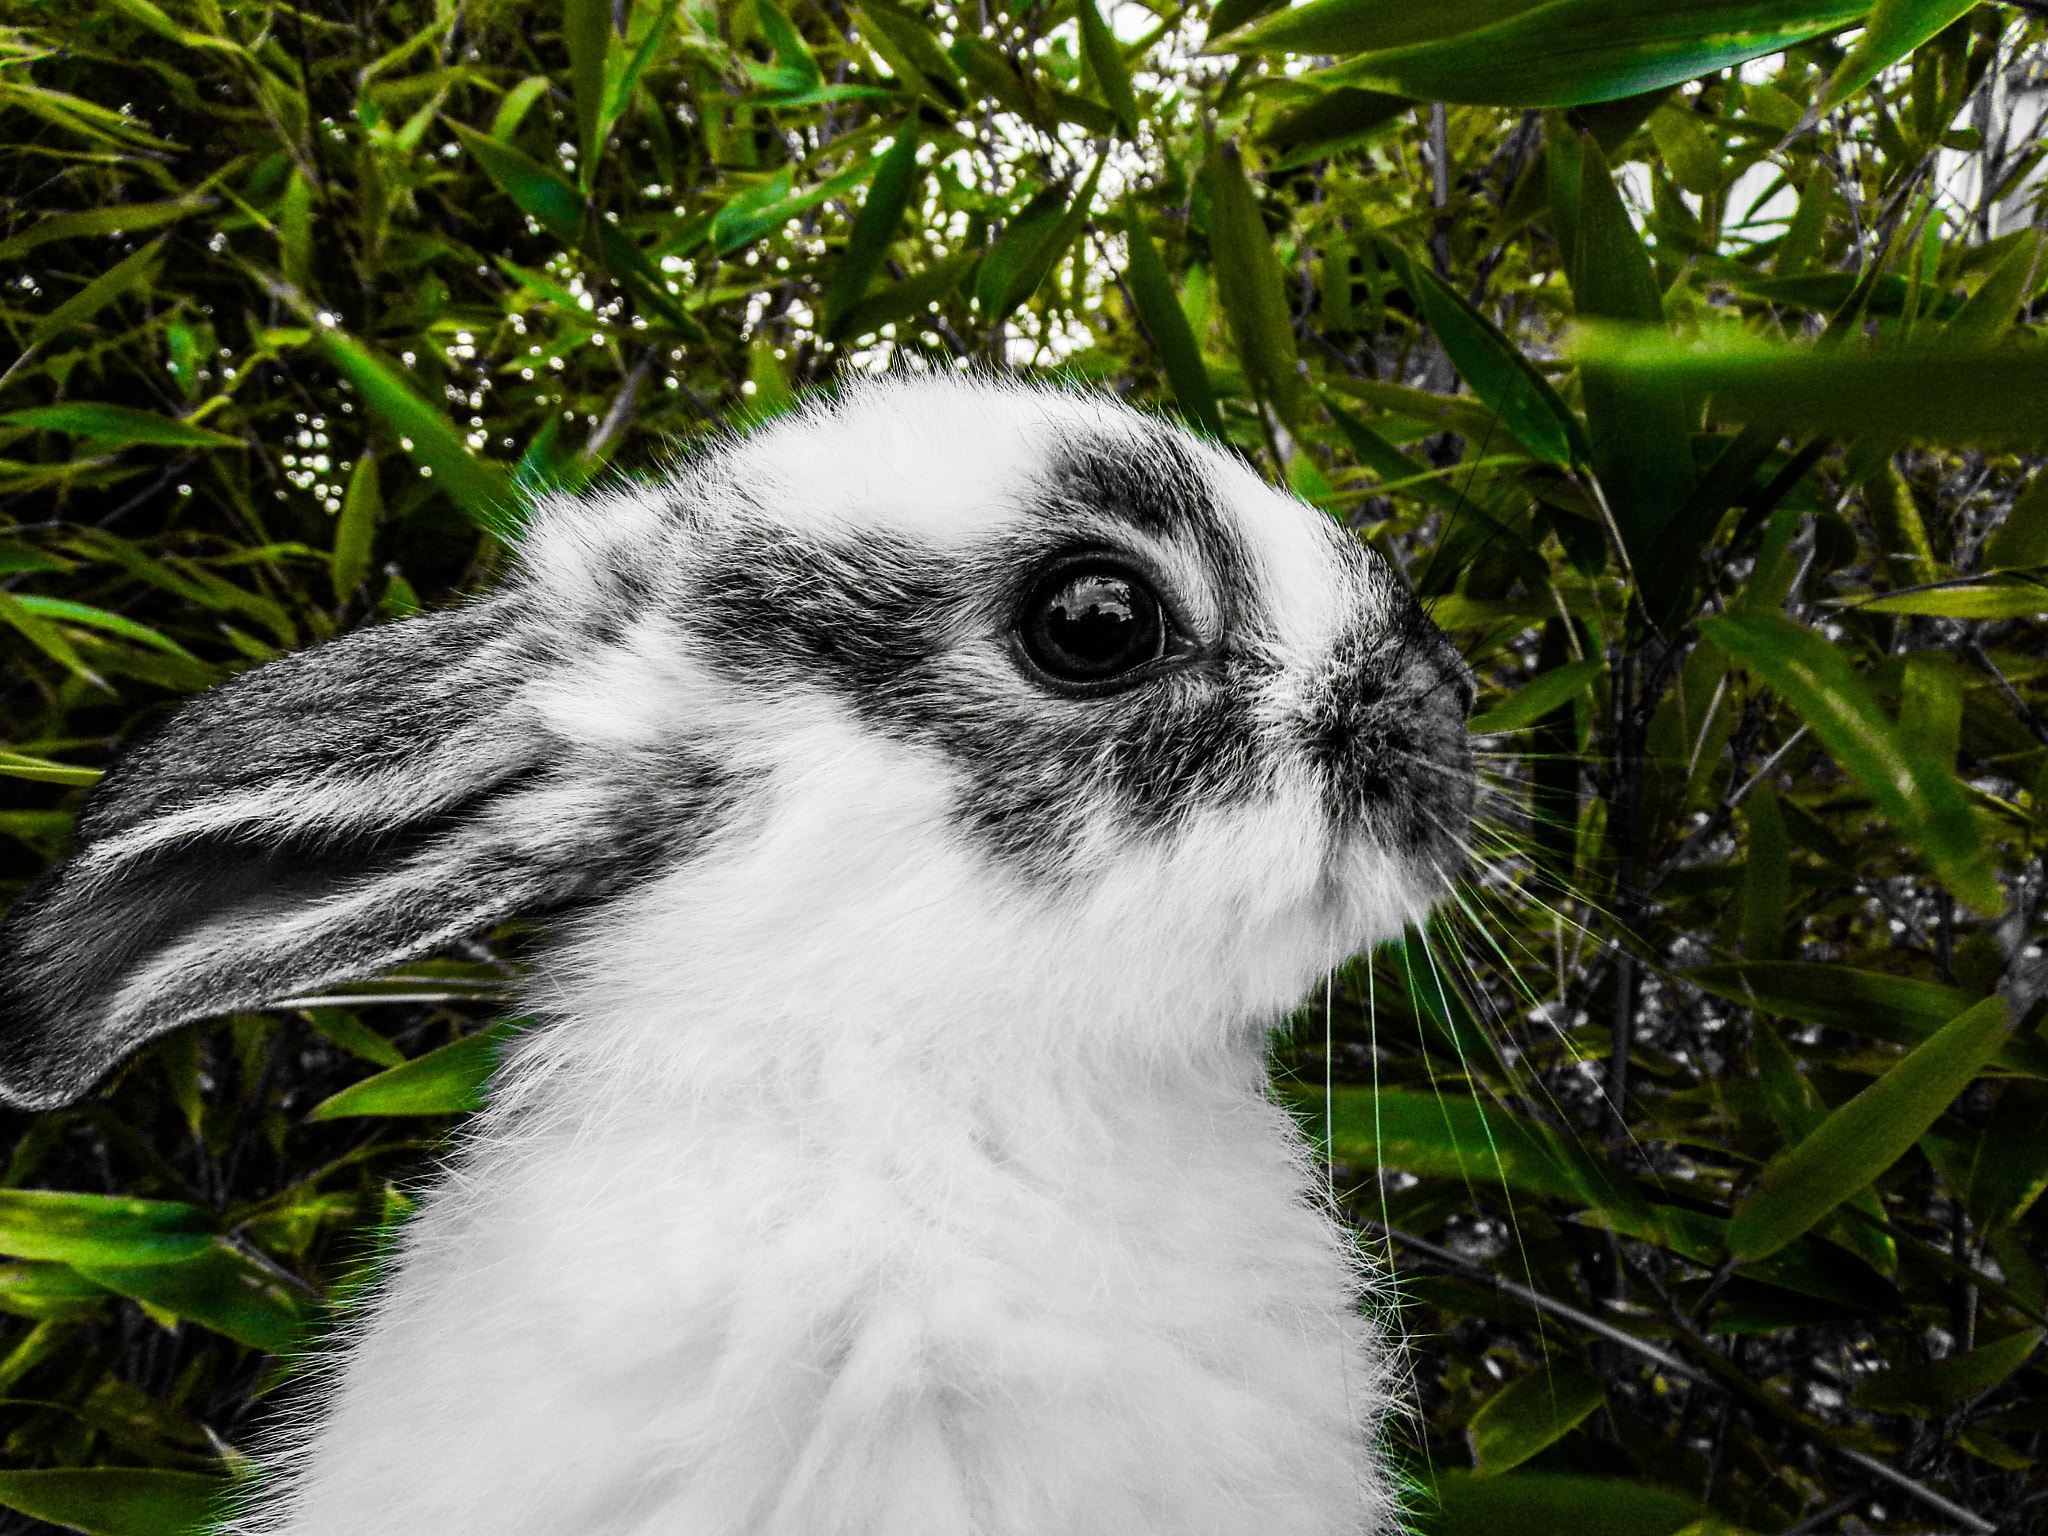 JK KODAK PIXPRO AZ422 sample photo. Rabbitandgreen#h photography